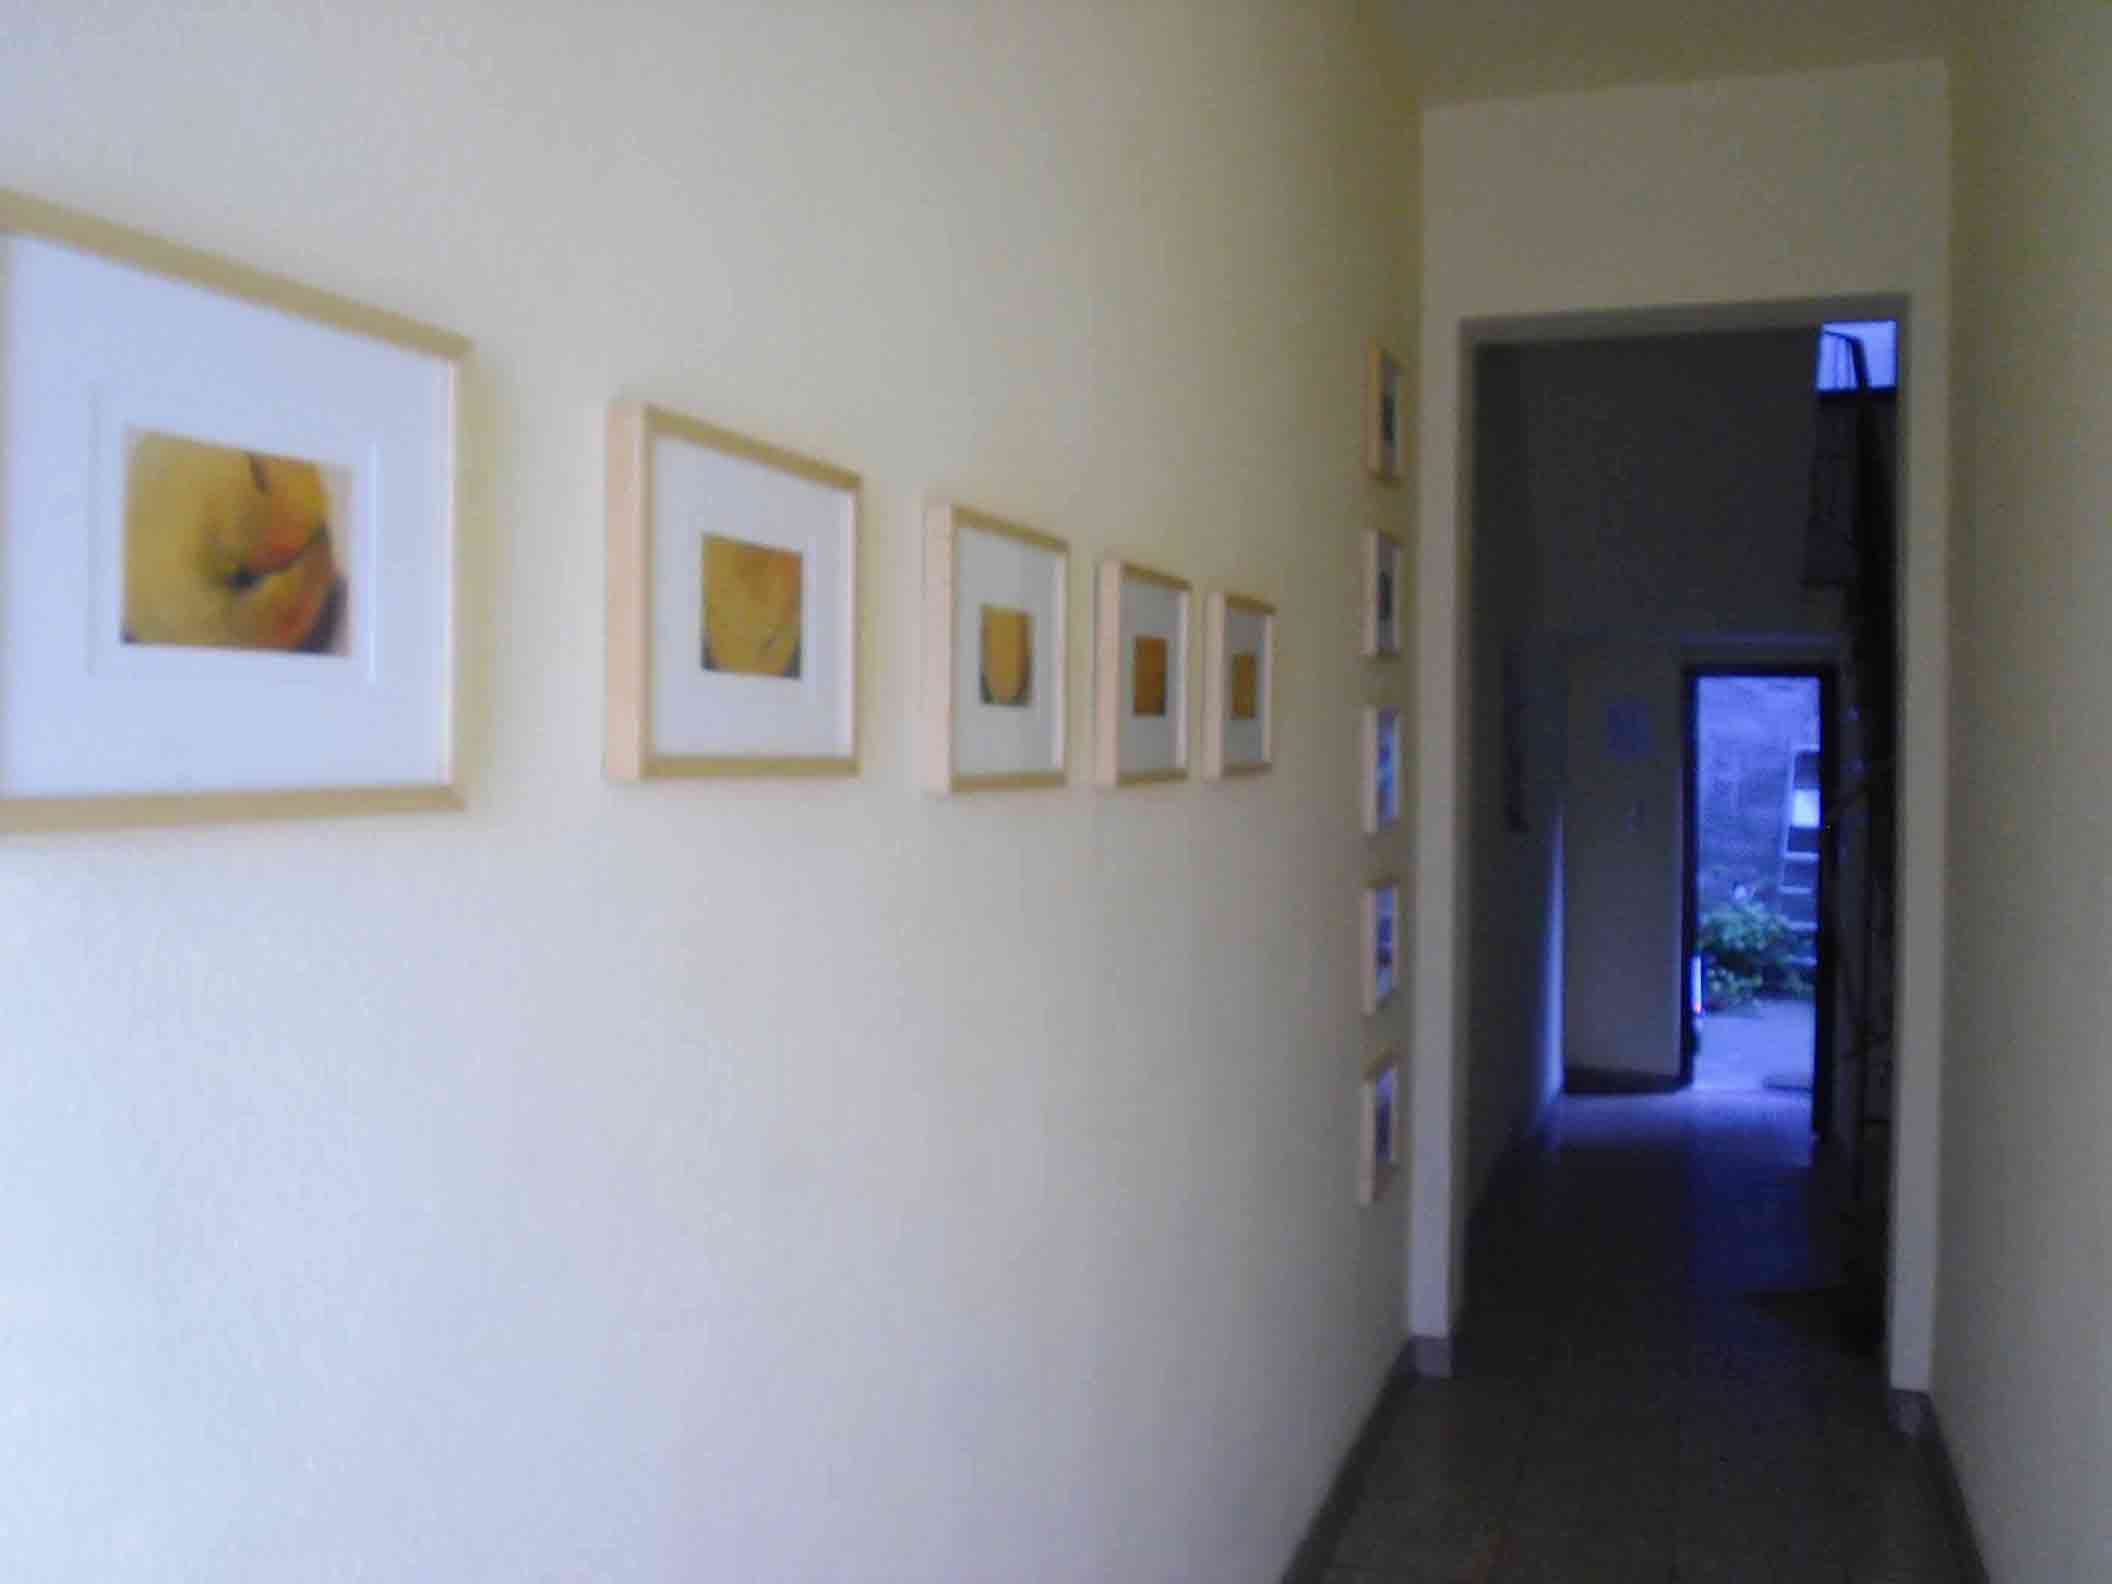 Blick vom Hauseingang; an der Wand Peters Pastelle - eine wagerechte Orangene Reihe von 5 kleinen, gerahmten Pastellen